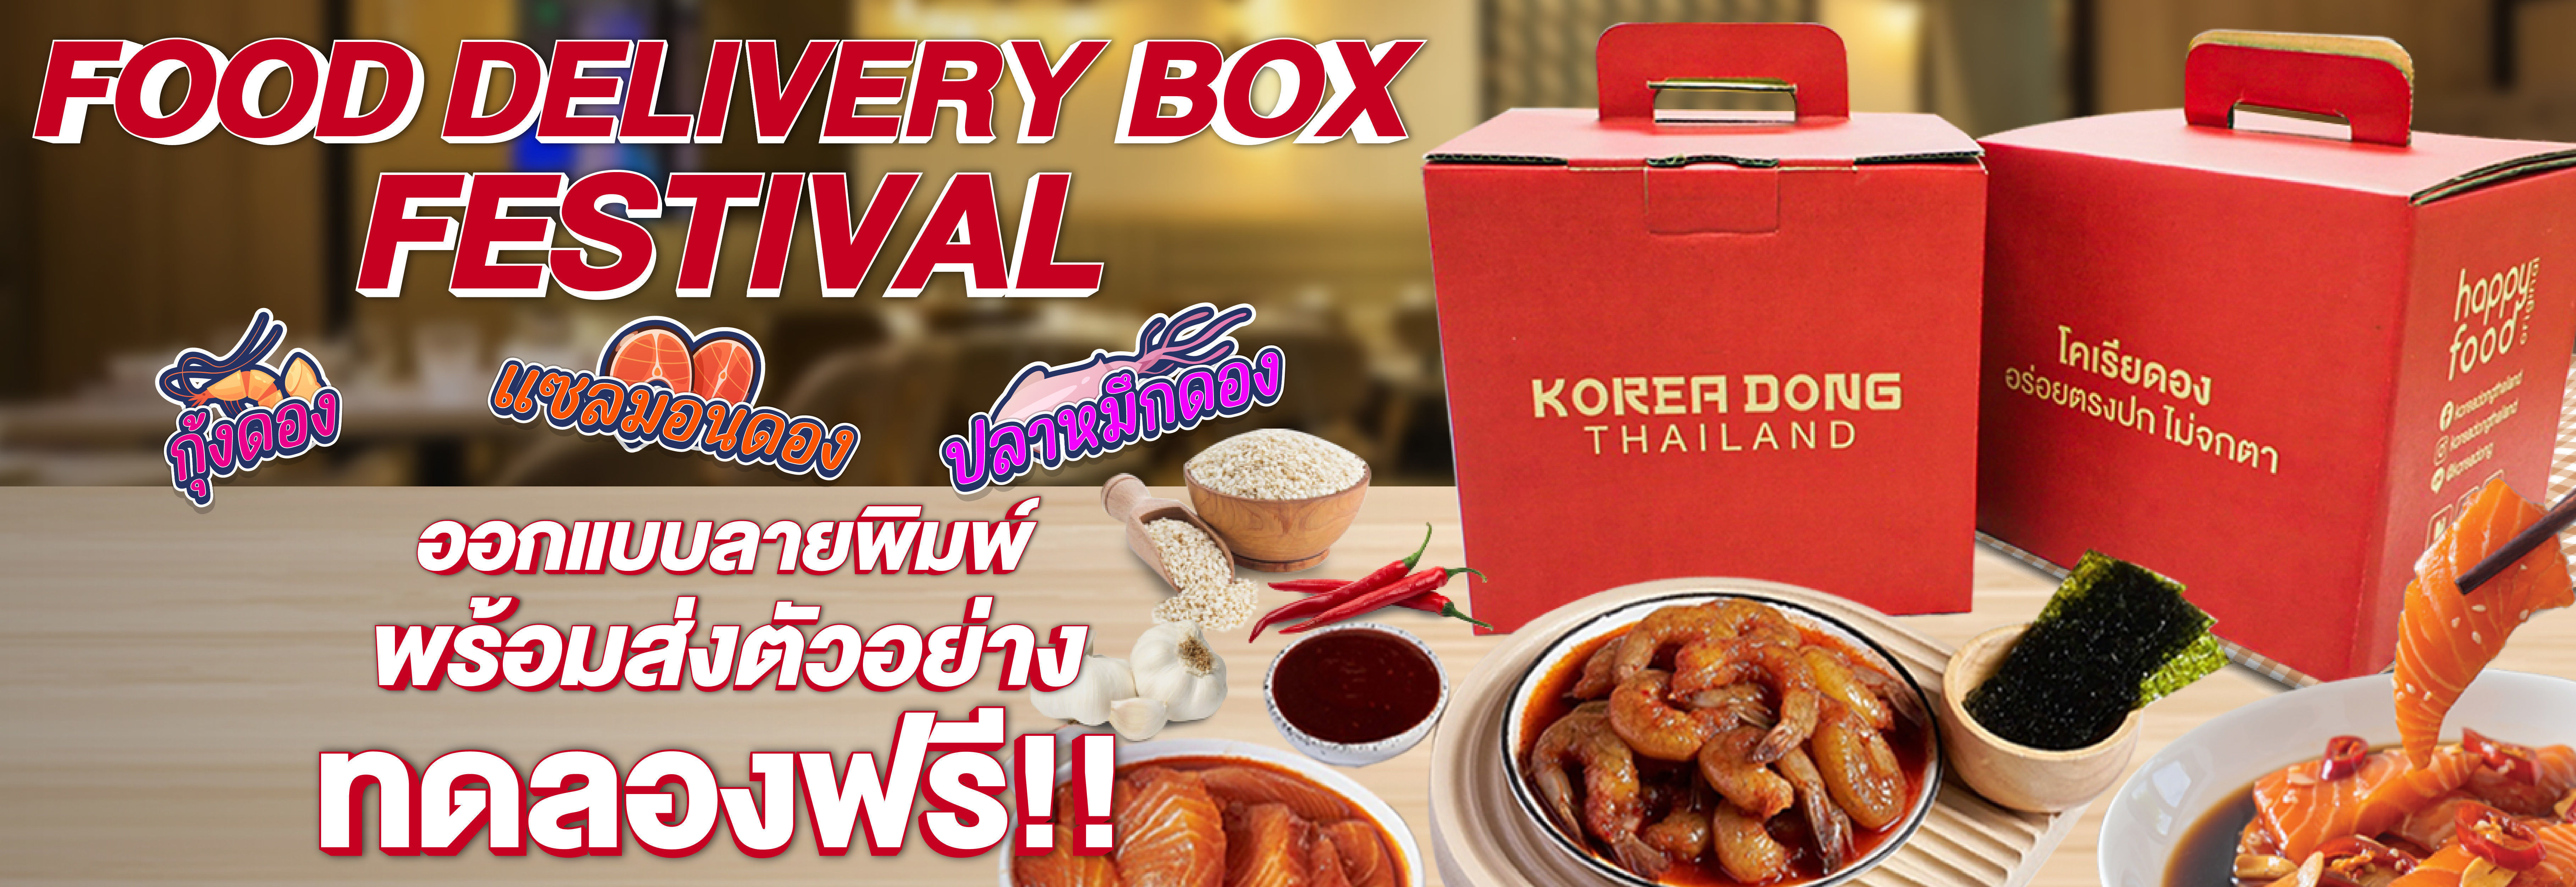 กล่องแซลม่อนดอง กล่องอาหารเกาหลี กล่องอาหาร Korea Dong Thailand | KASBOX - โรงงานผลิตกล่องกระดาษลูกฟ